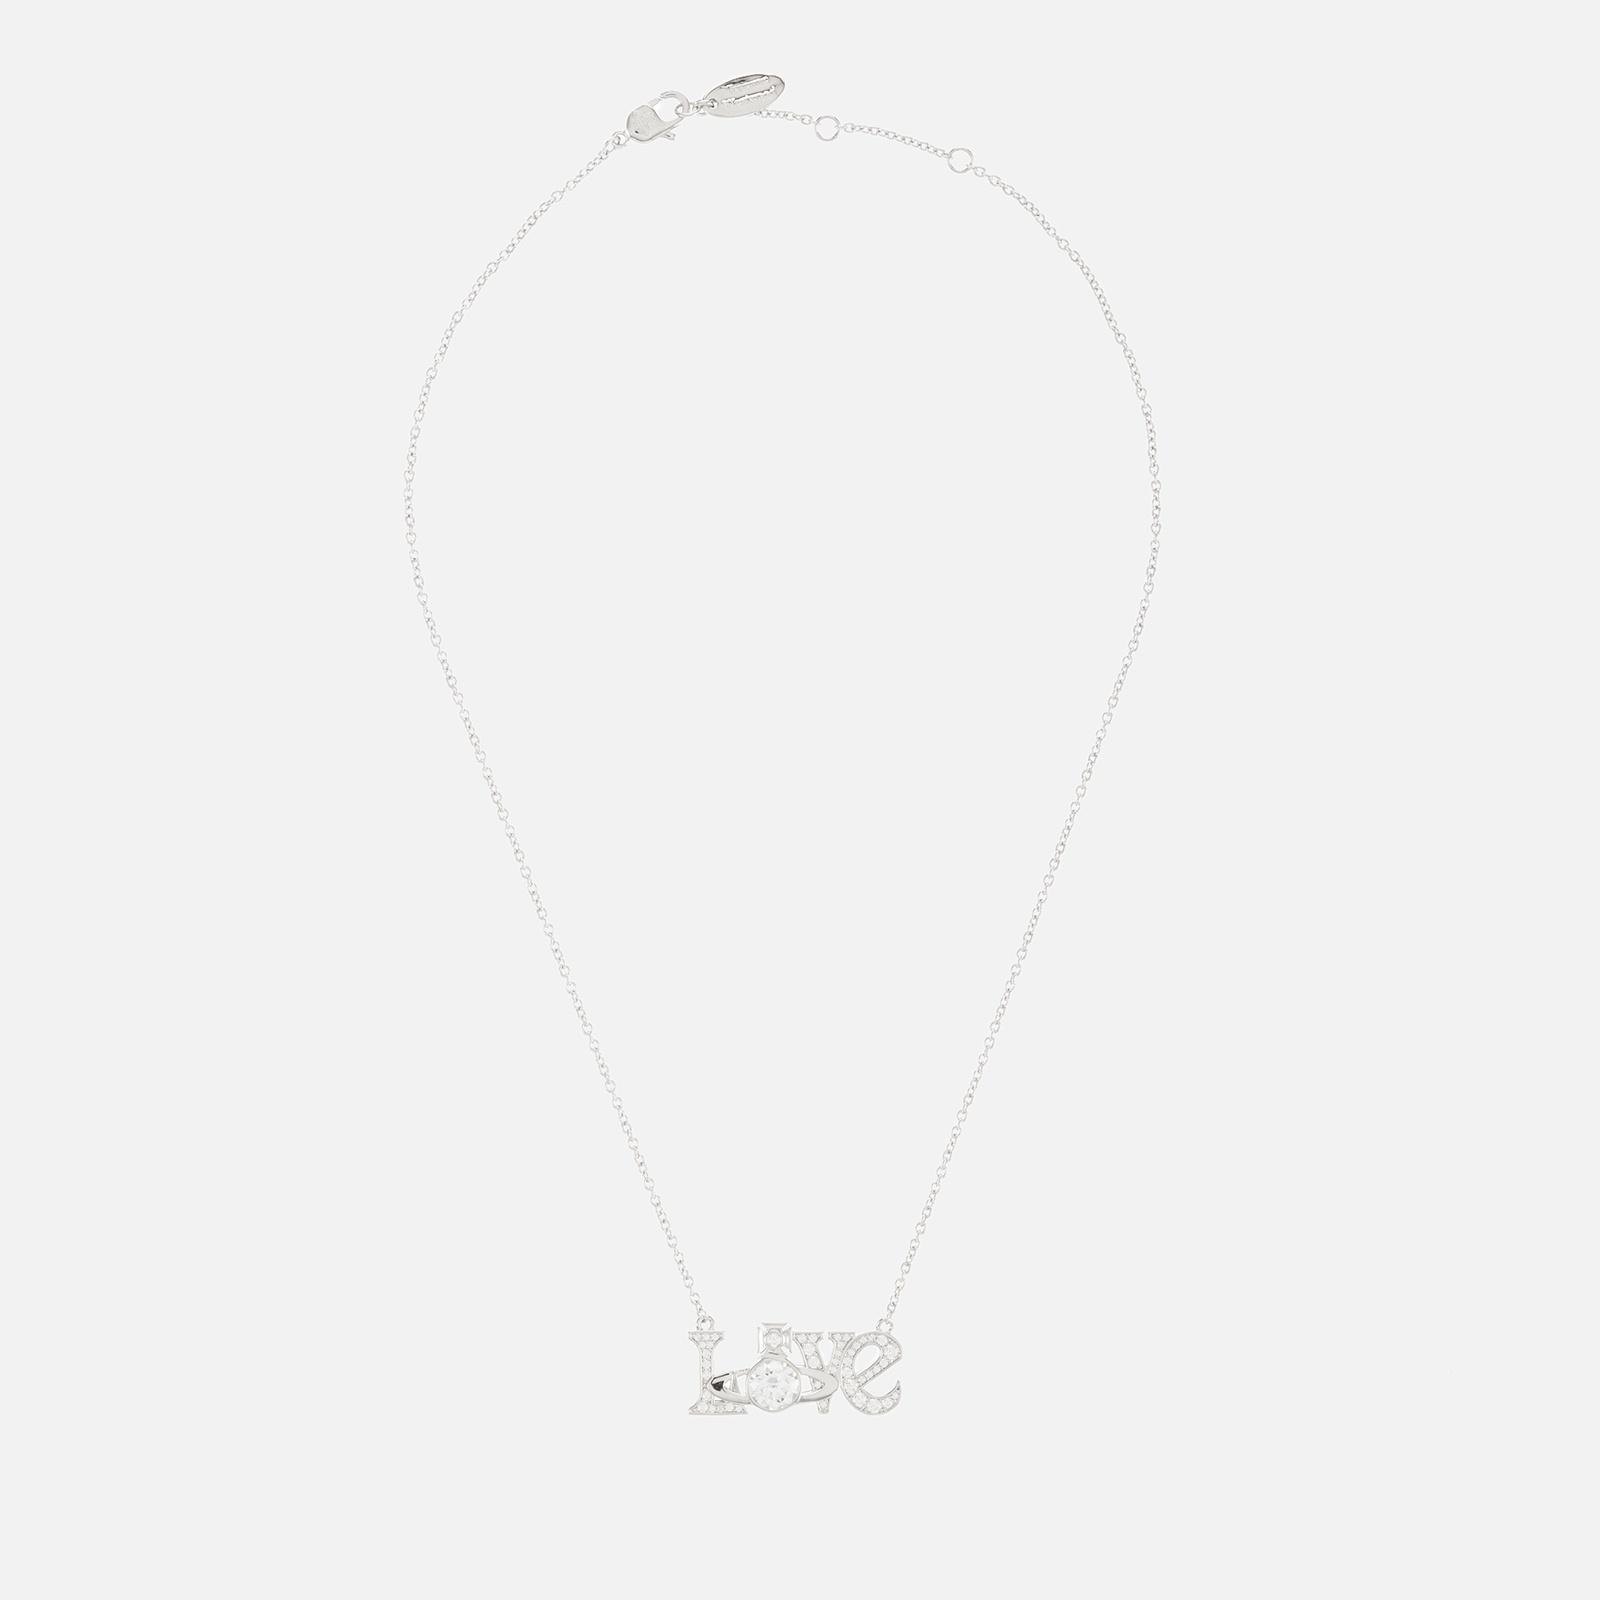 Vivienne Westwood Love Silver Tone Pendant Necklace - 2